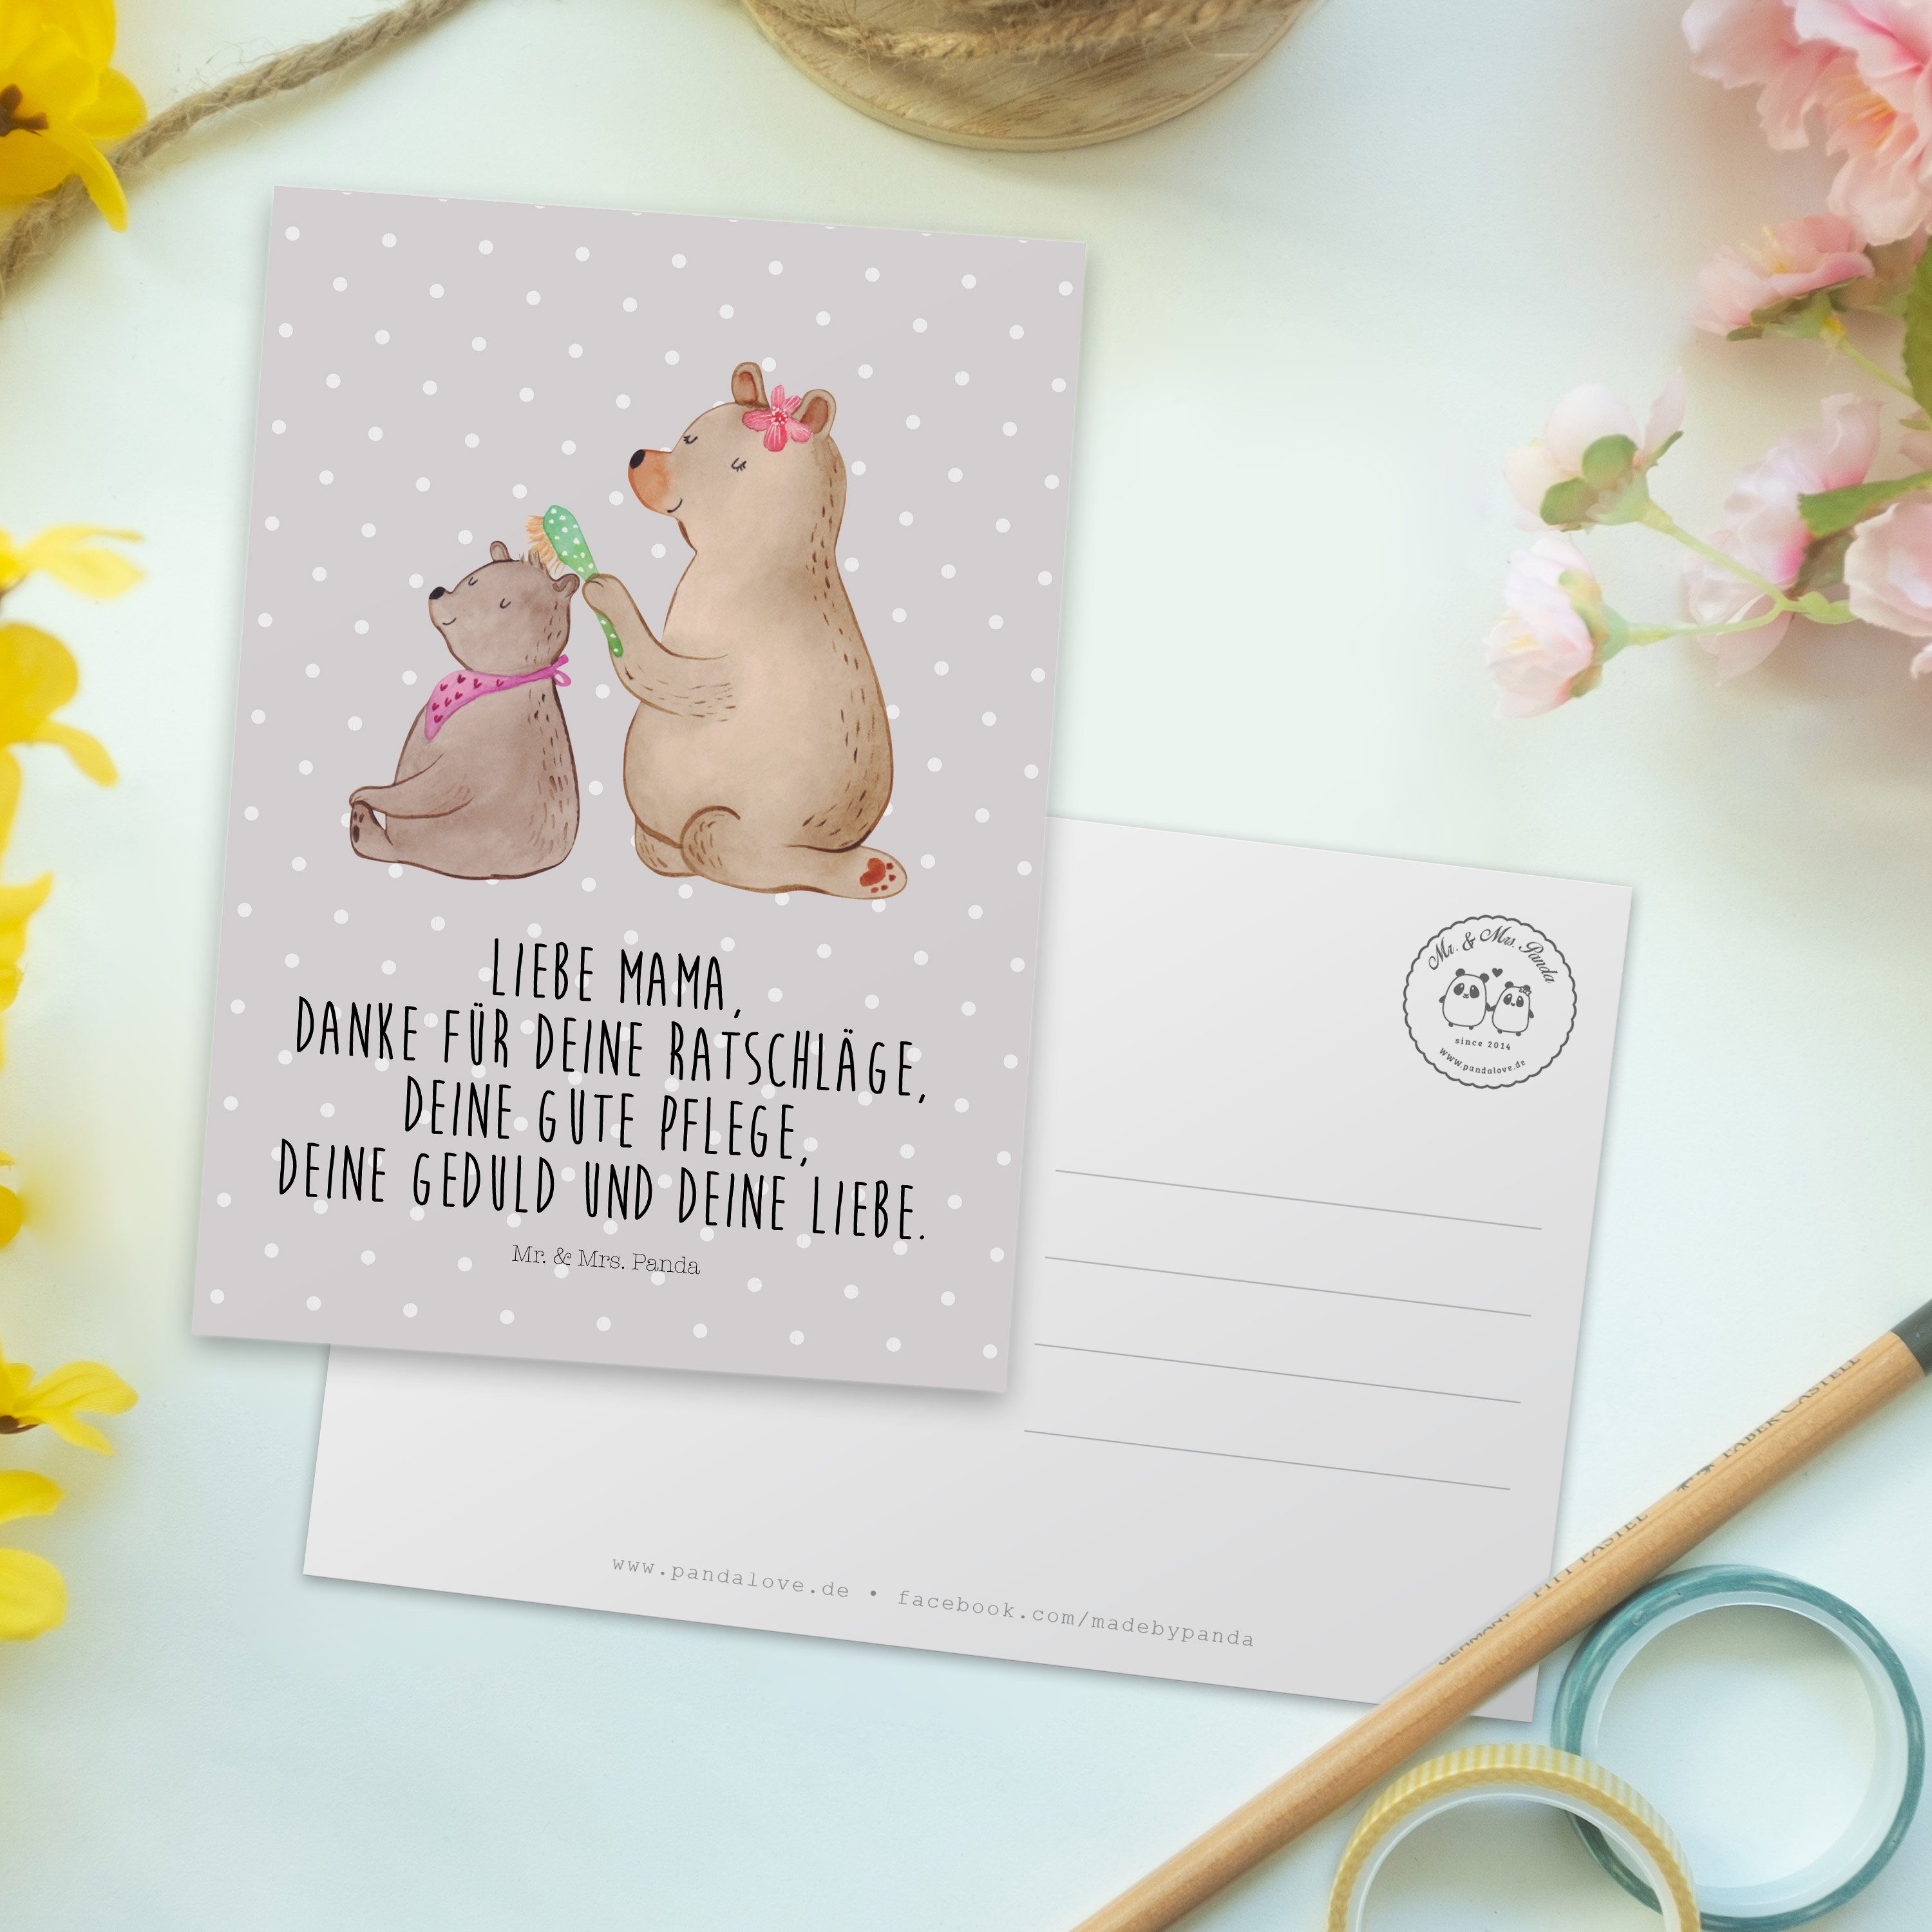 Mr. & Mrs. Panda Postkarte Pastell Ges Geschenk, - - Einladungskarte, Familie, Kind Grau Bär mit